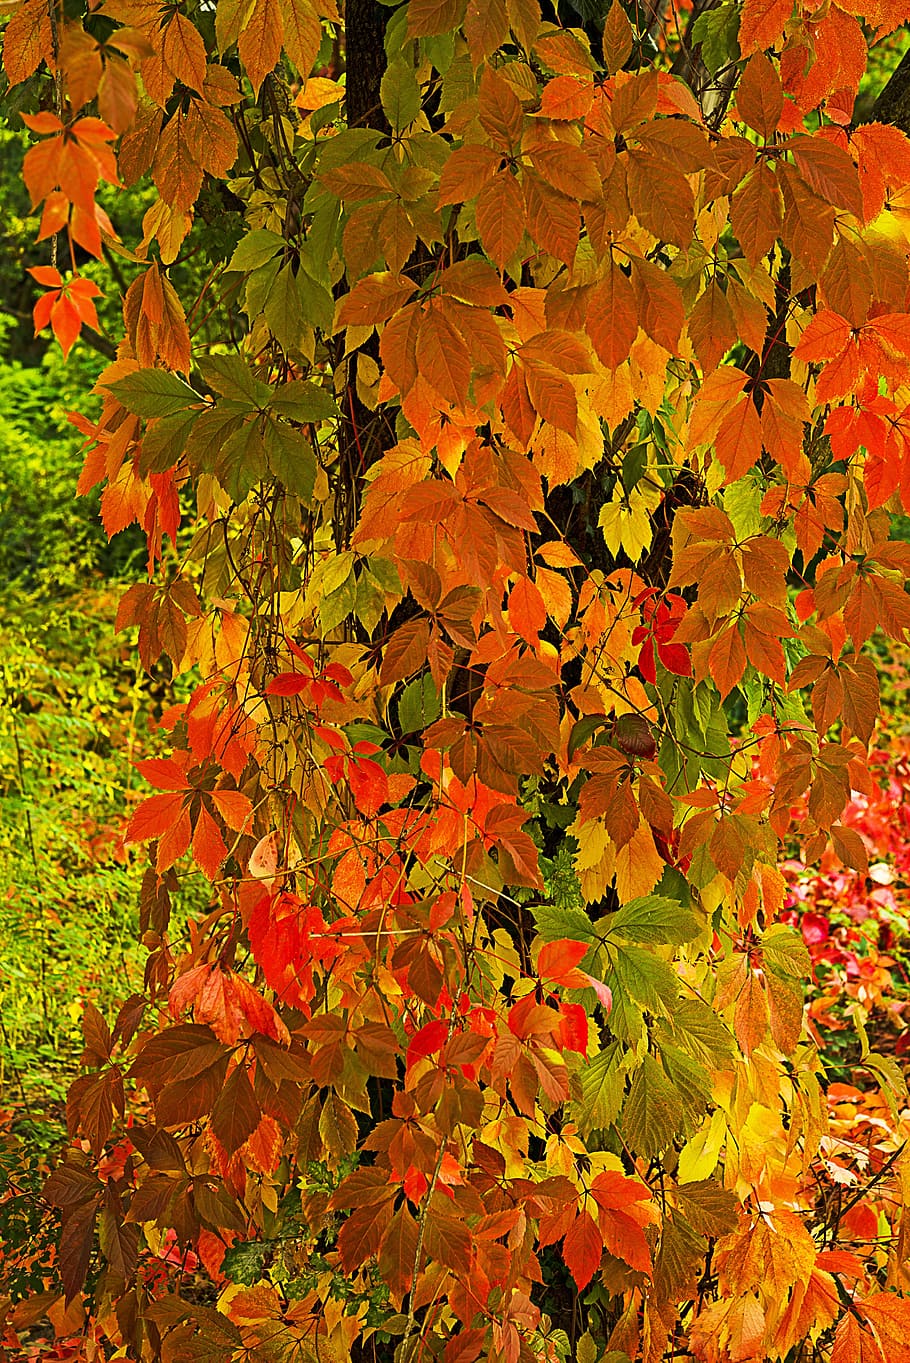 ツルニチニチソウ, クリーパー, 葉, 赤, 紫, オレンジ, 黄色, 秋, 明るい色, 秋の色